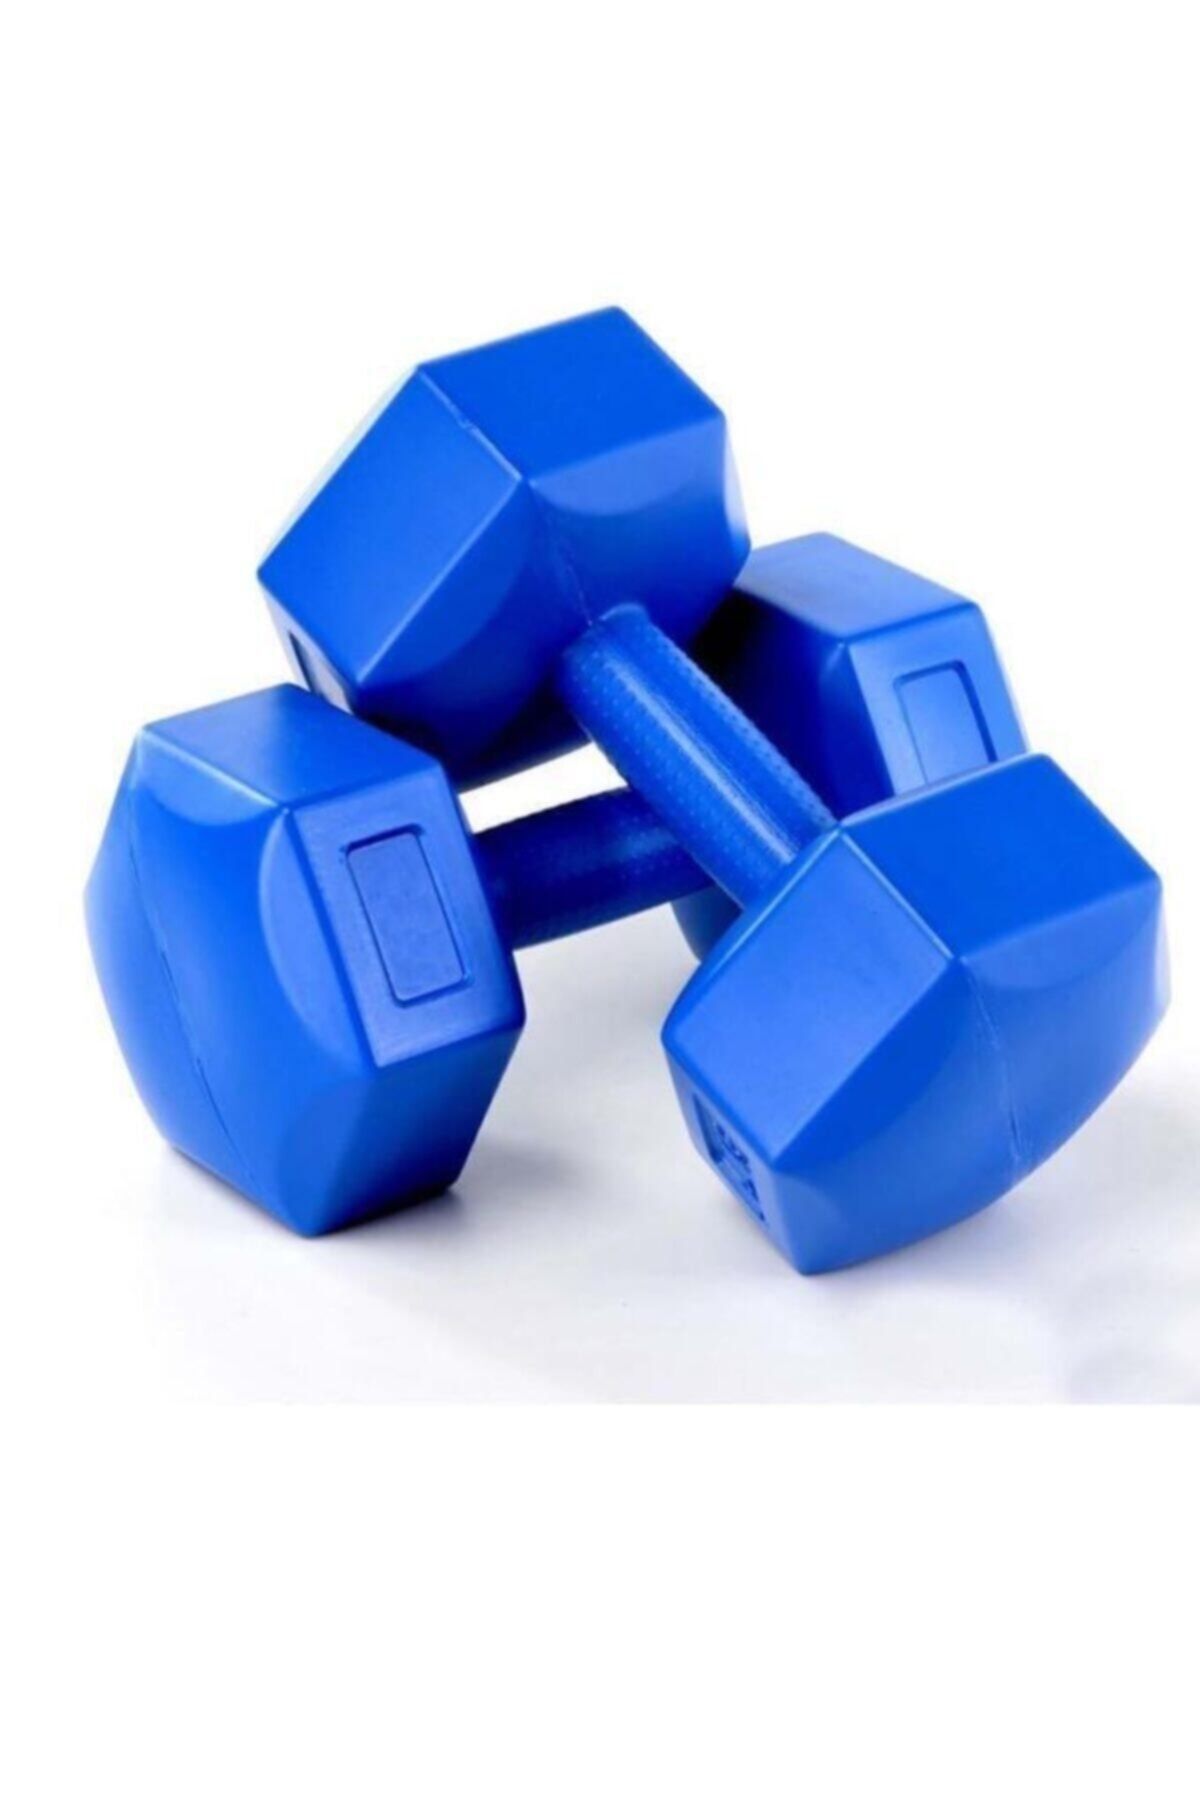 Genel Markalar Tek Ebat Dumbell Seti Spor Aletleri 2x1 kg Mavi 2 x 1 Kg